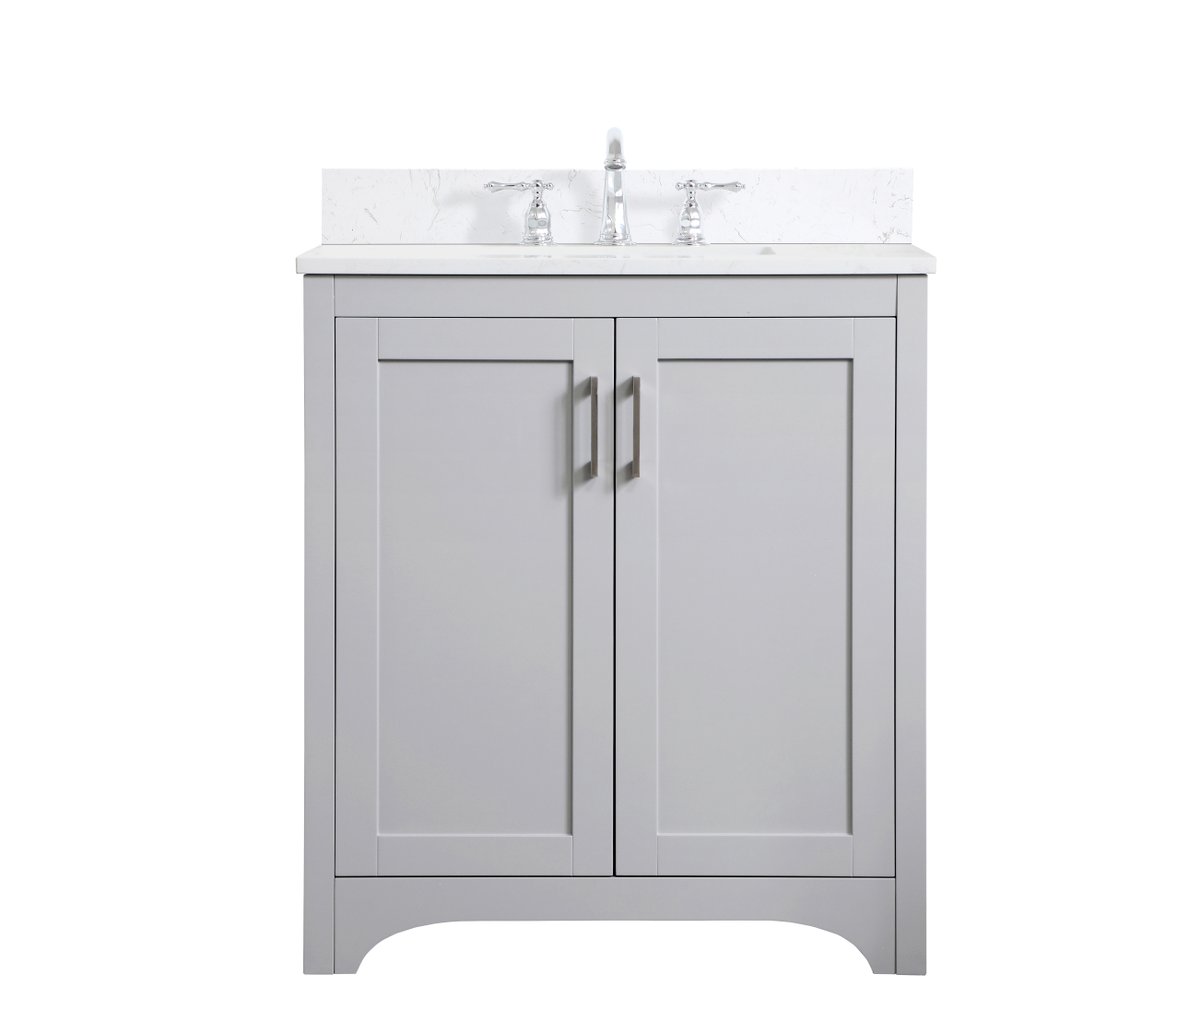 VF17030GR-BS 30" Single Bathroom Vanity in Grey With Backsplash